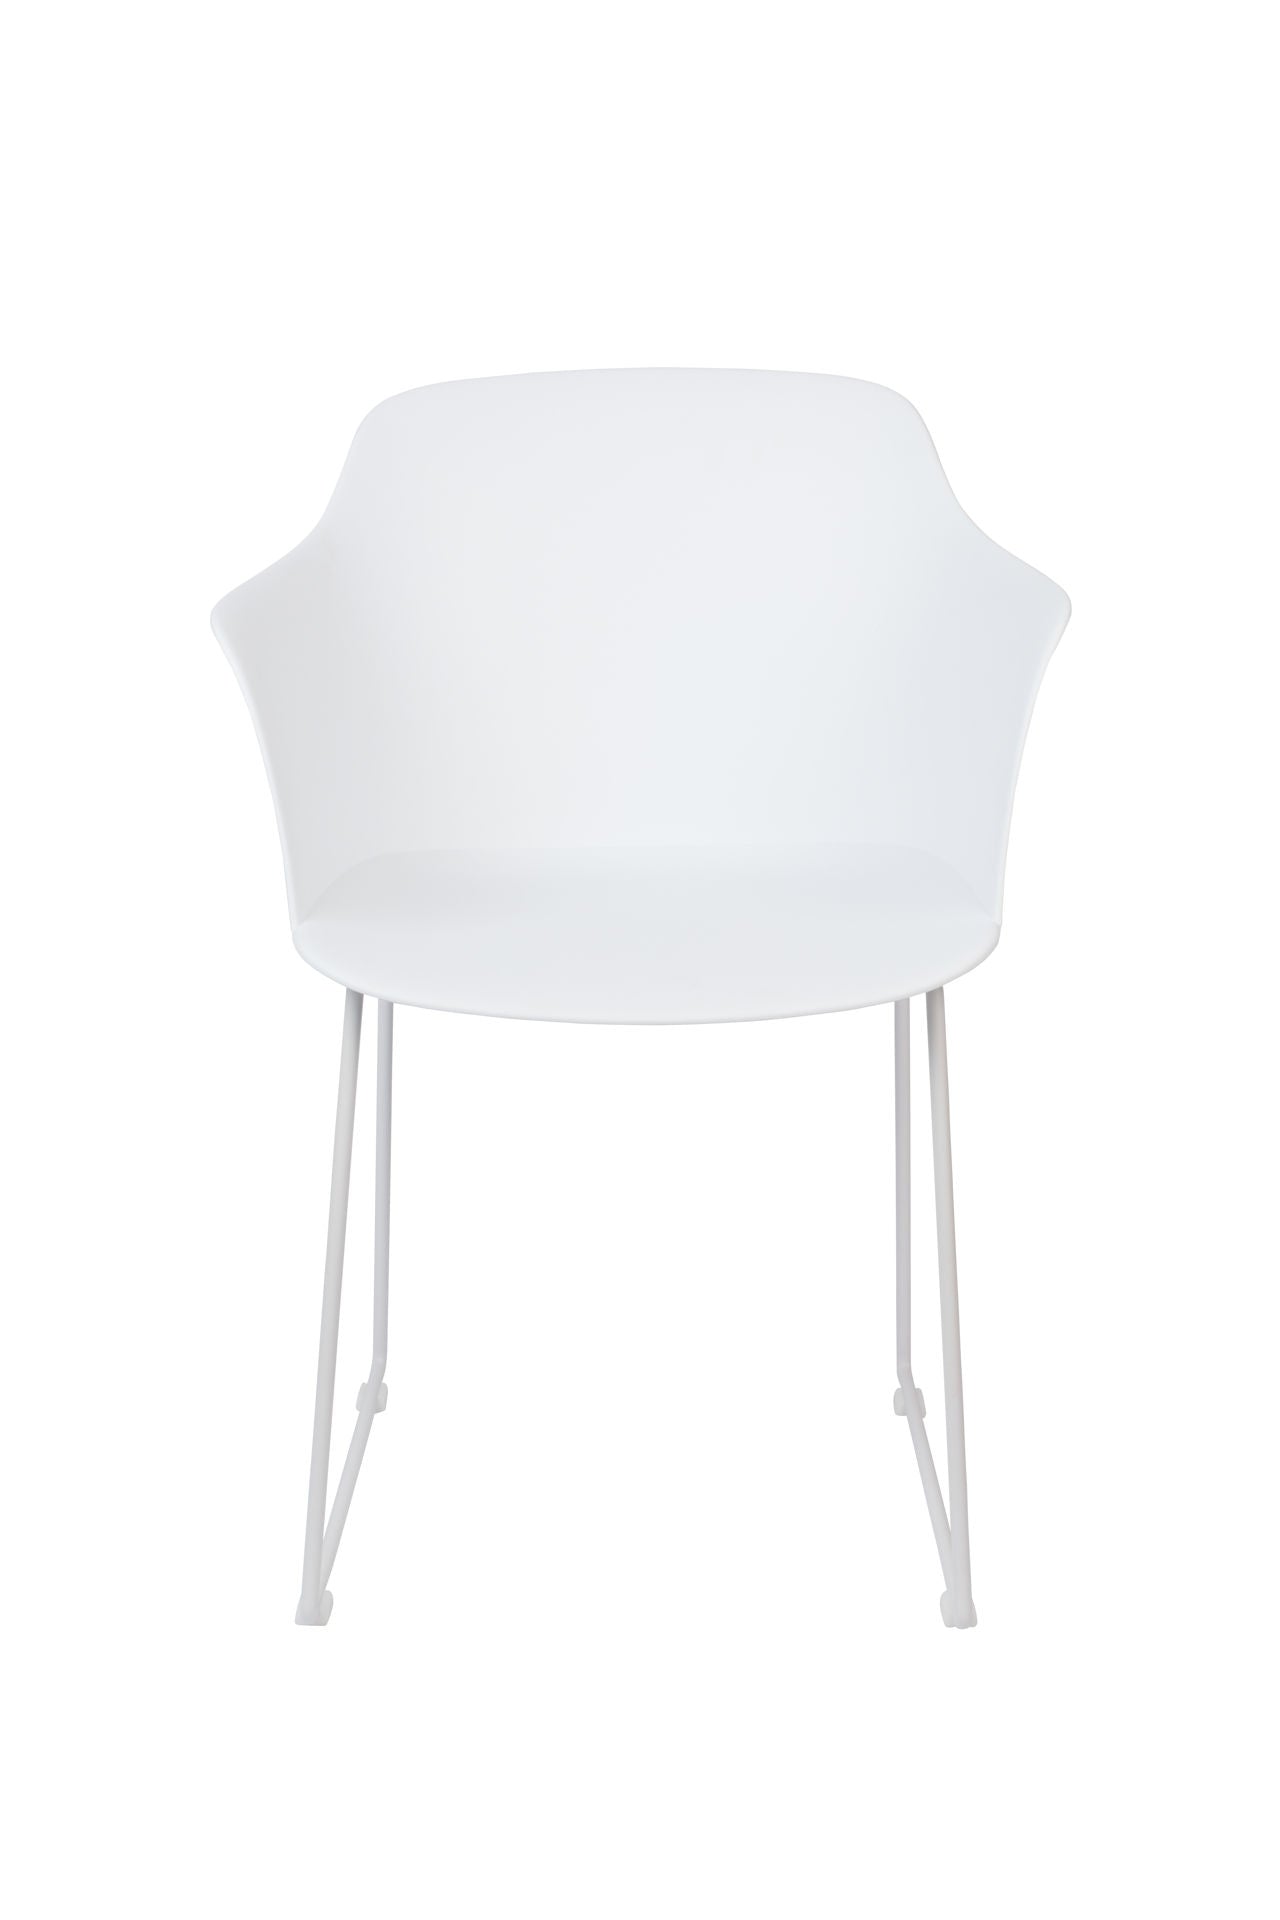 Nancy's Perry Heights Chair - Scandinave - Blanc - Polypropylène, Plastique, Acier - 54 cm x 58 cm x 81,5 cm